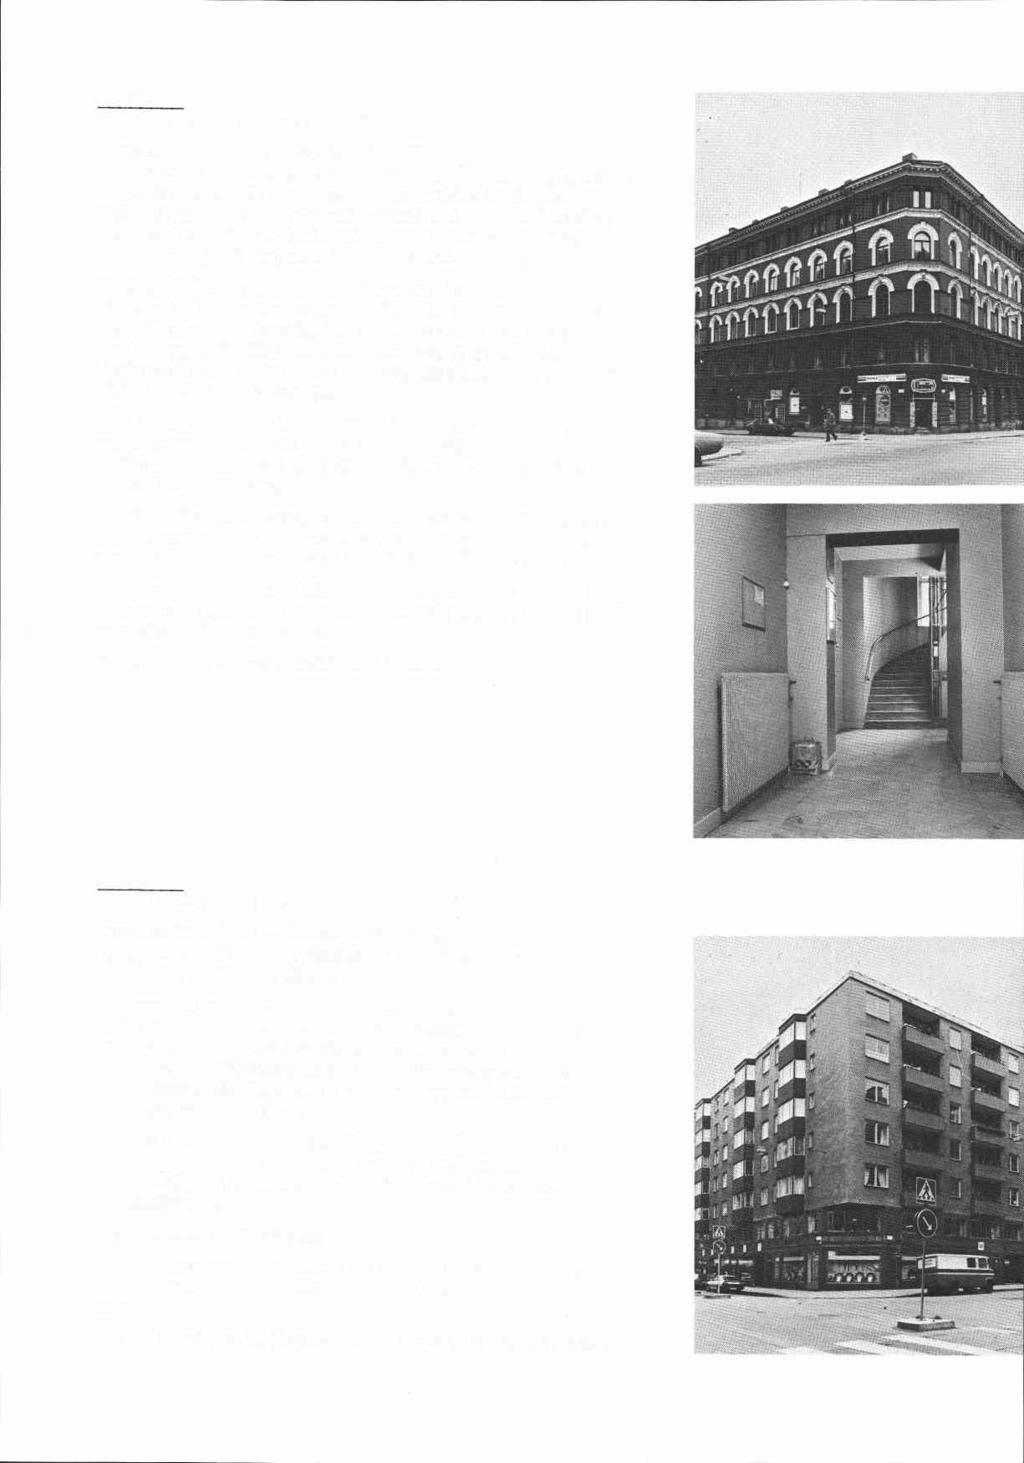 Lyran 10 Linnégatan 63, Grevgatan 48 Bostadsfastighet, inventerad 1976. Byggnadsår 1884-85, osignerade ritningar, byggherre J Johansson. 1927 ombyggnad av butik å hörnet.